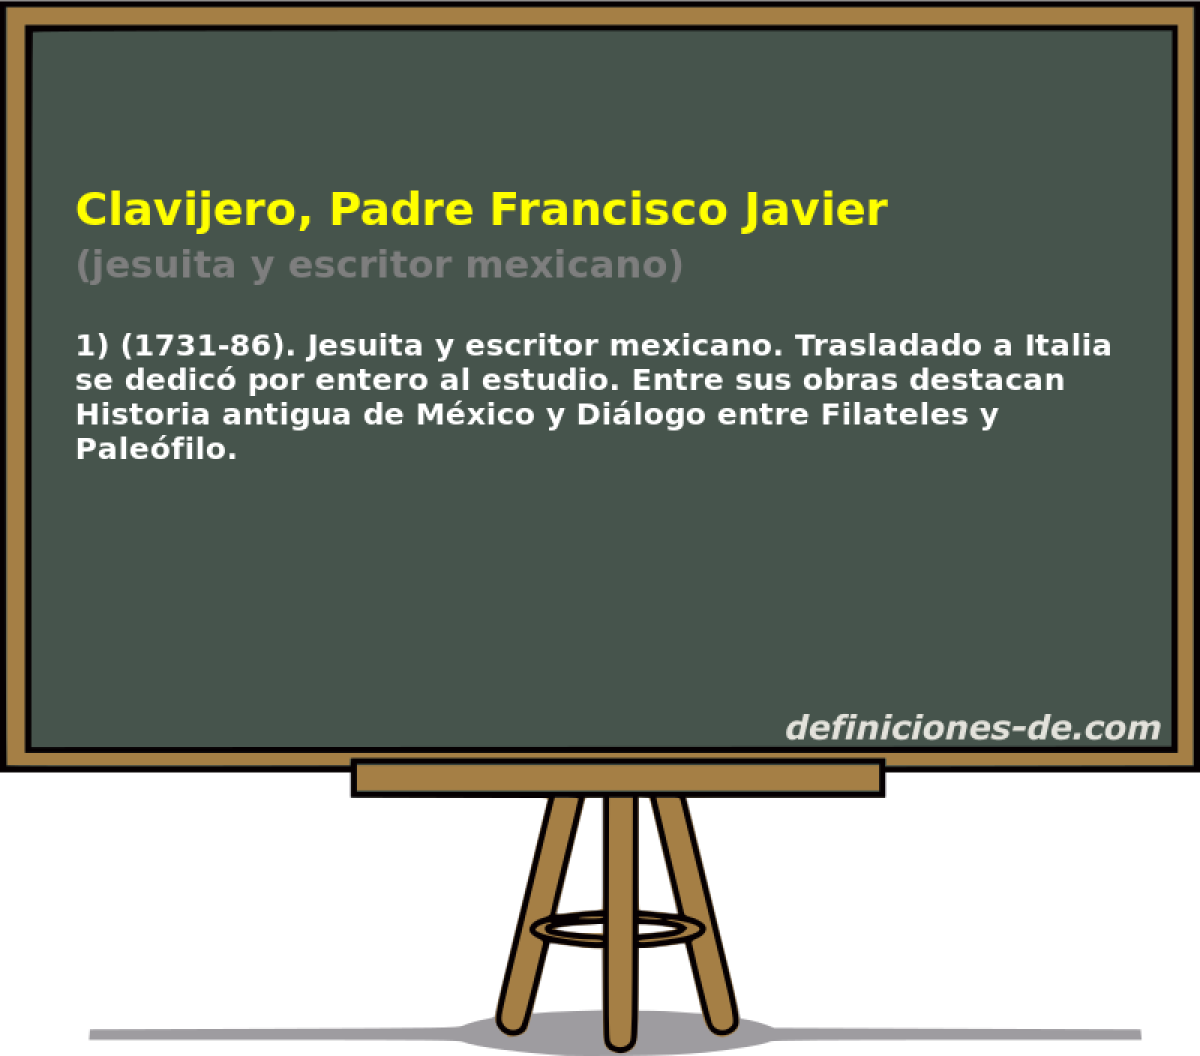 Clavijero, Padre Francisco Javier (jesuita y escritor mexicano)